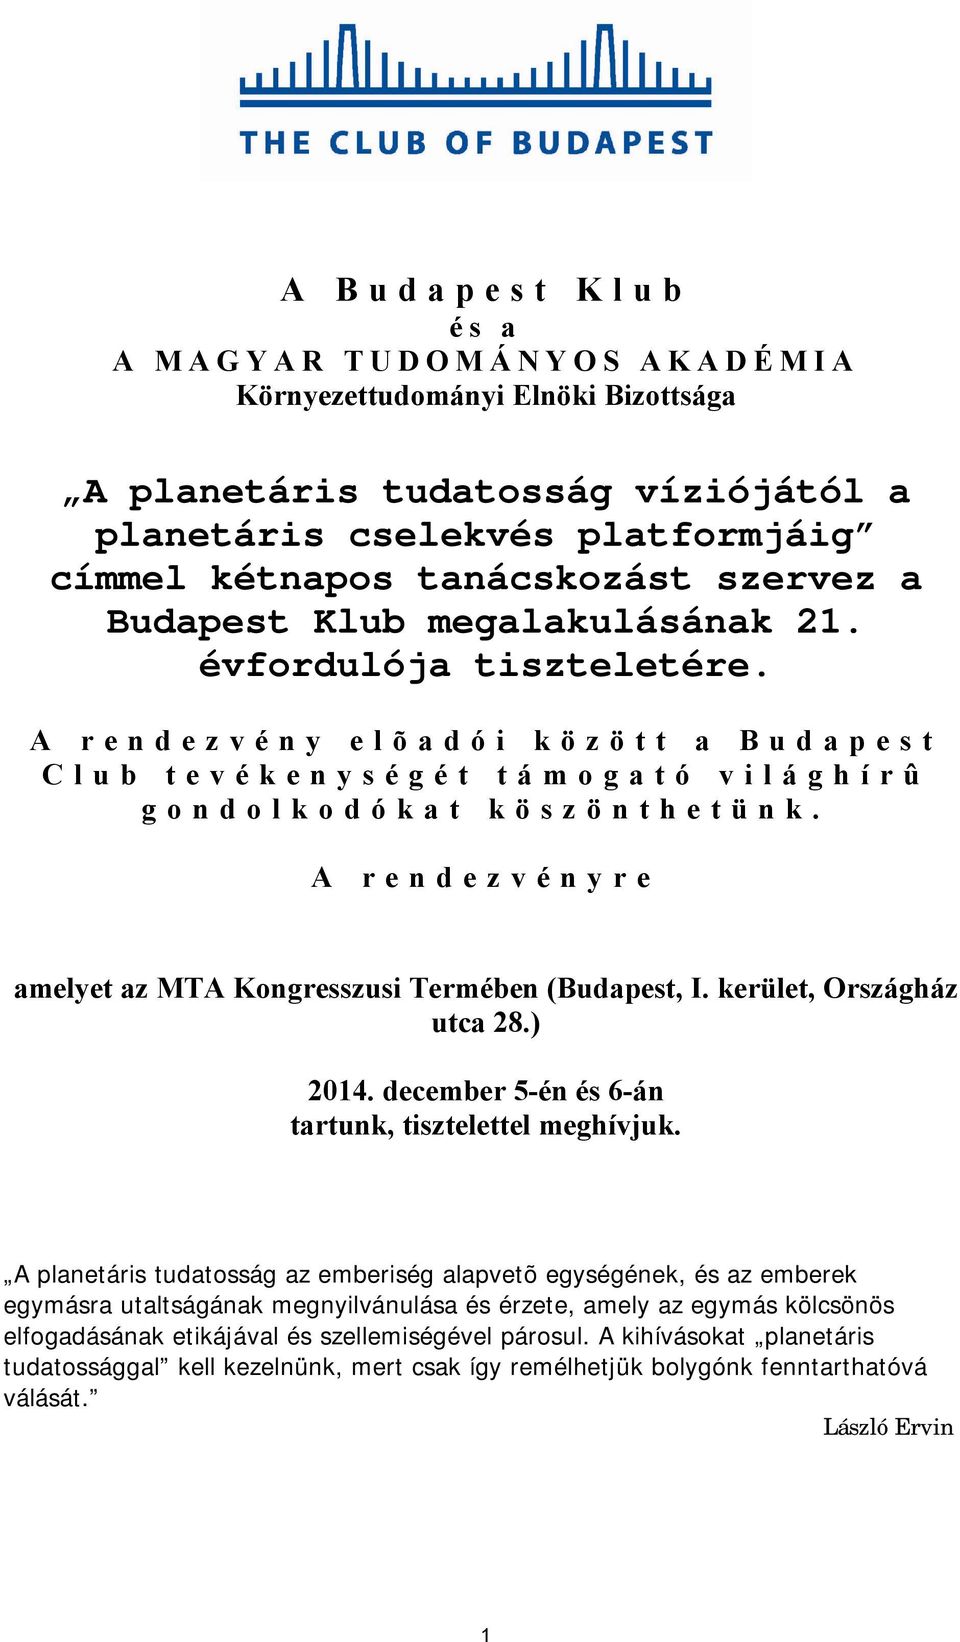 A rendezvényre amelyet az MTA Kongresszusi Termében (Budapest, I. kerület, Országház utca 28.) 2014. december 5-én és 6-án tartunk, tisztelettel meghívjuk.